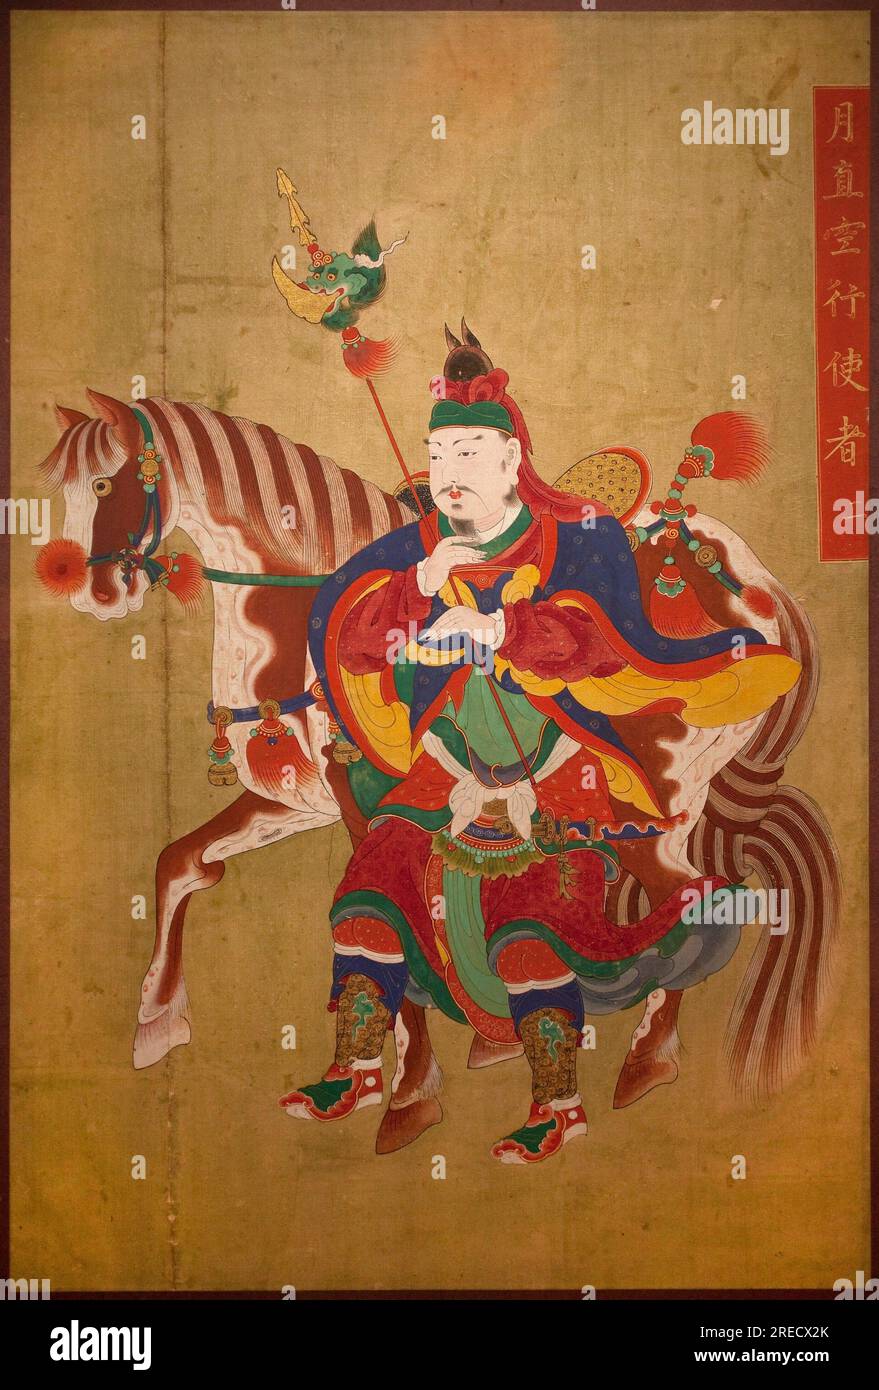 Messager de l'enfer. Peinture sur soie, fin Choson (Joseon) (1392-1910). Art coreen. Musee national de Coree, Seoul (Coree du Sud). Stock Photo